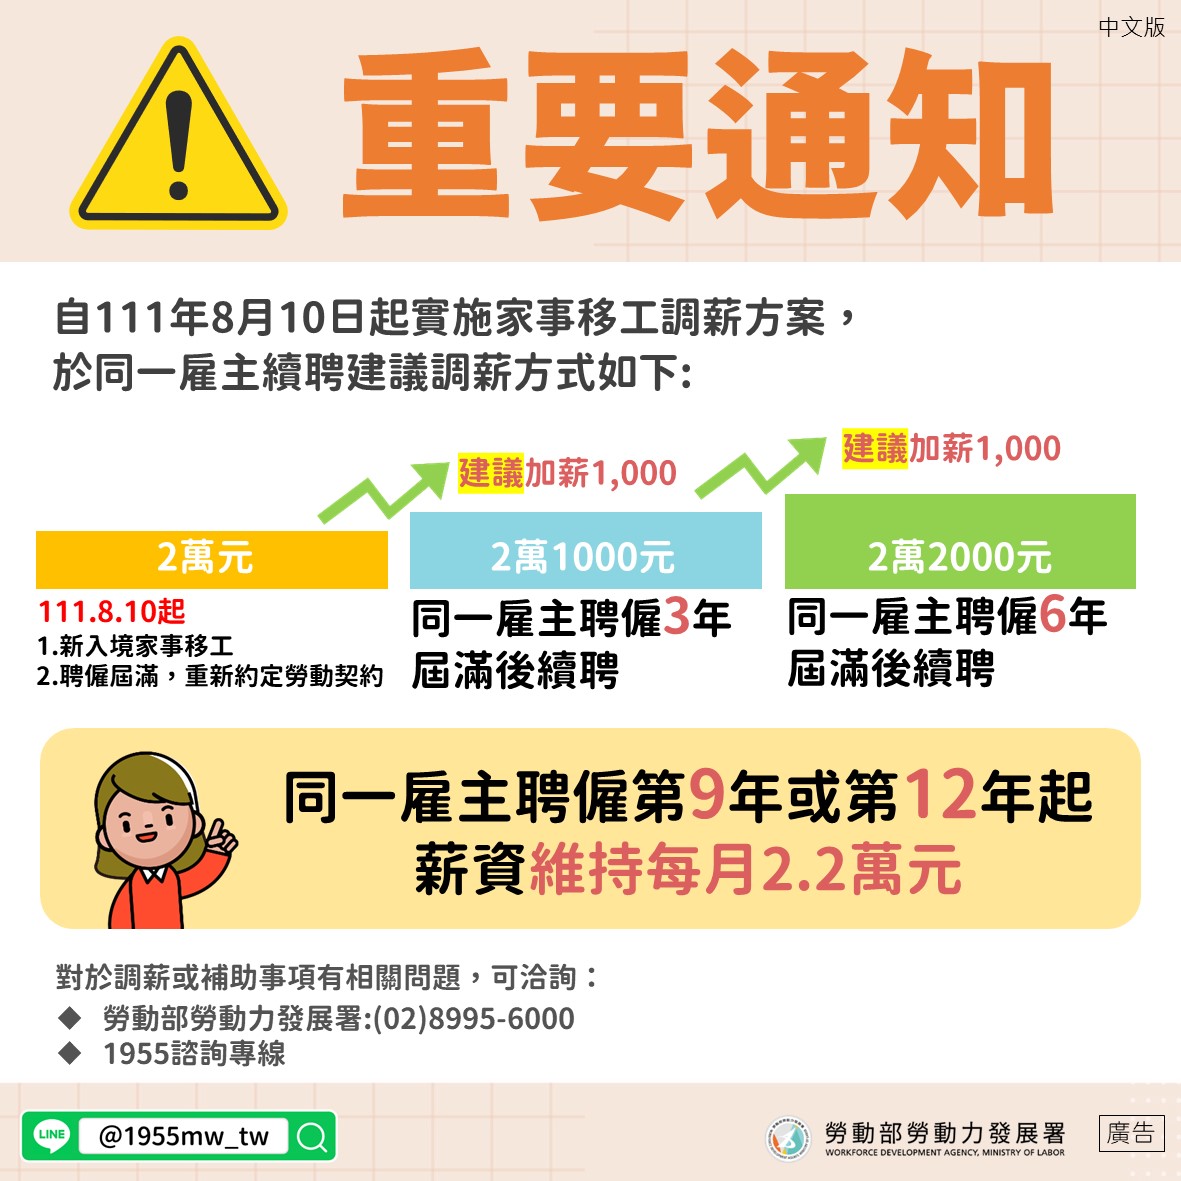 中文版本-同一雇主聘僱第9年或第12年起薪資維持每月2.2萬元.jpg